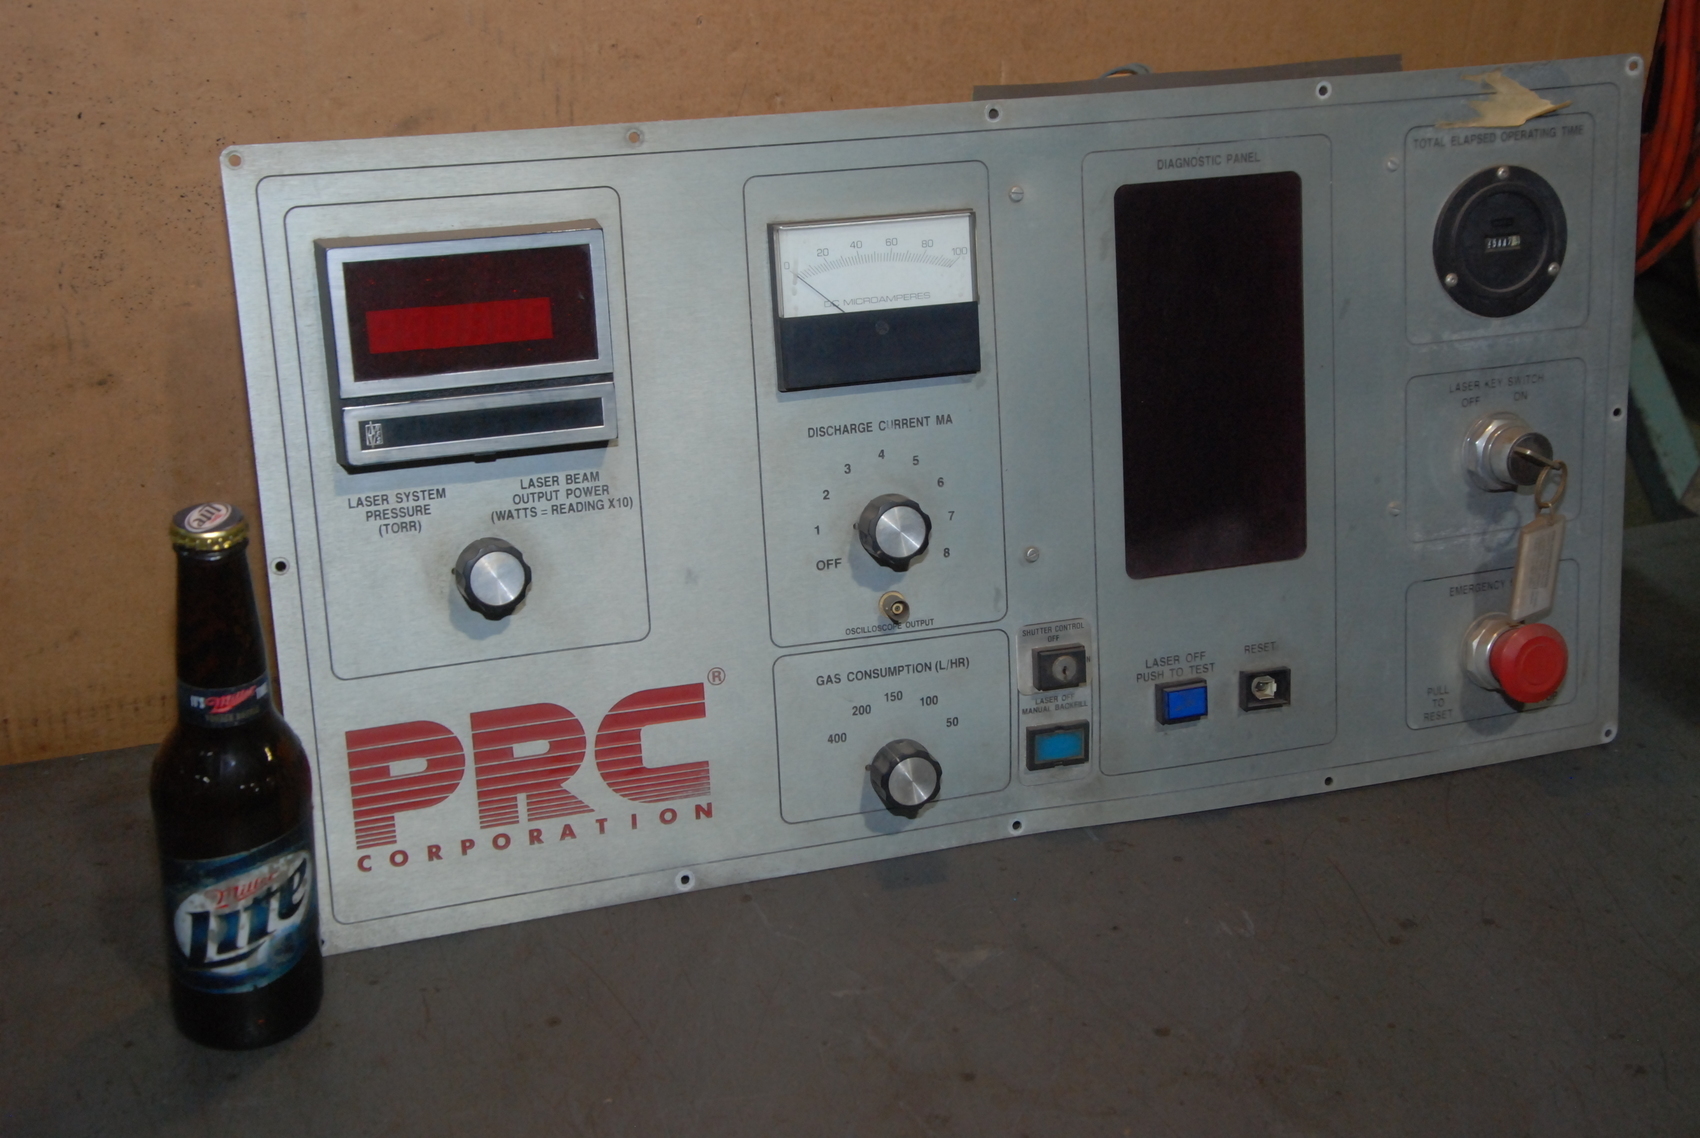 Amada Lasmac 667 PRC laser control panel